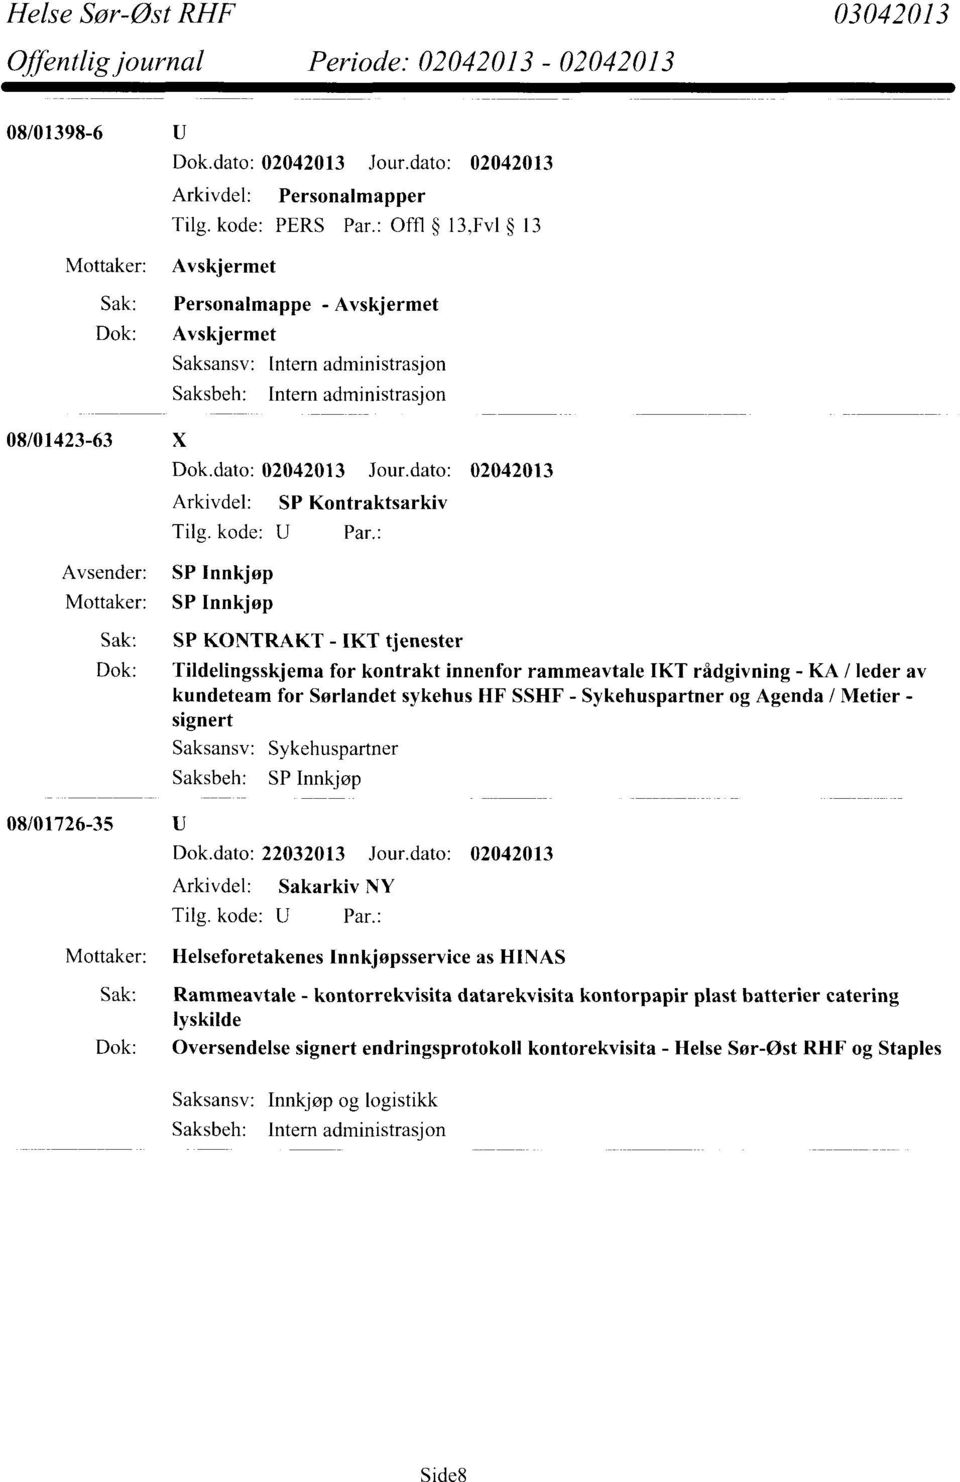 KONTRAKT - IKT tjenester Dok: Tildelingsskjema for kontrakt innenfor rammeavtale IKT rådgivning - KA / leder av kundeteam for Sørlandet sykehus IIF SSHF - Sykehuspartner og Agenda / Metier - signert